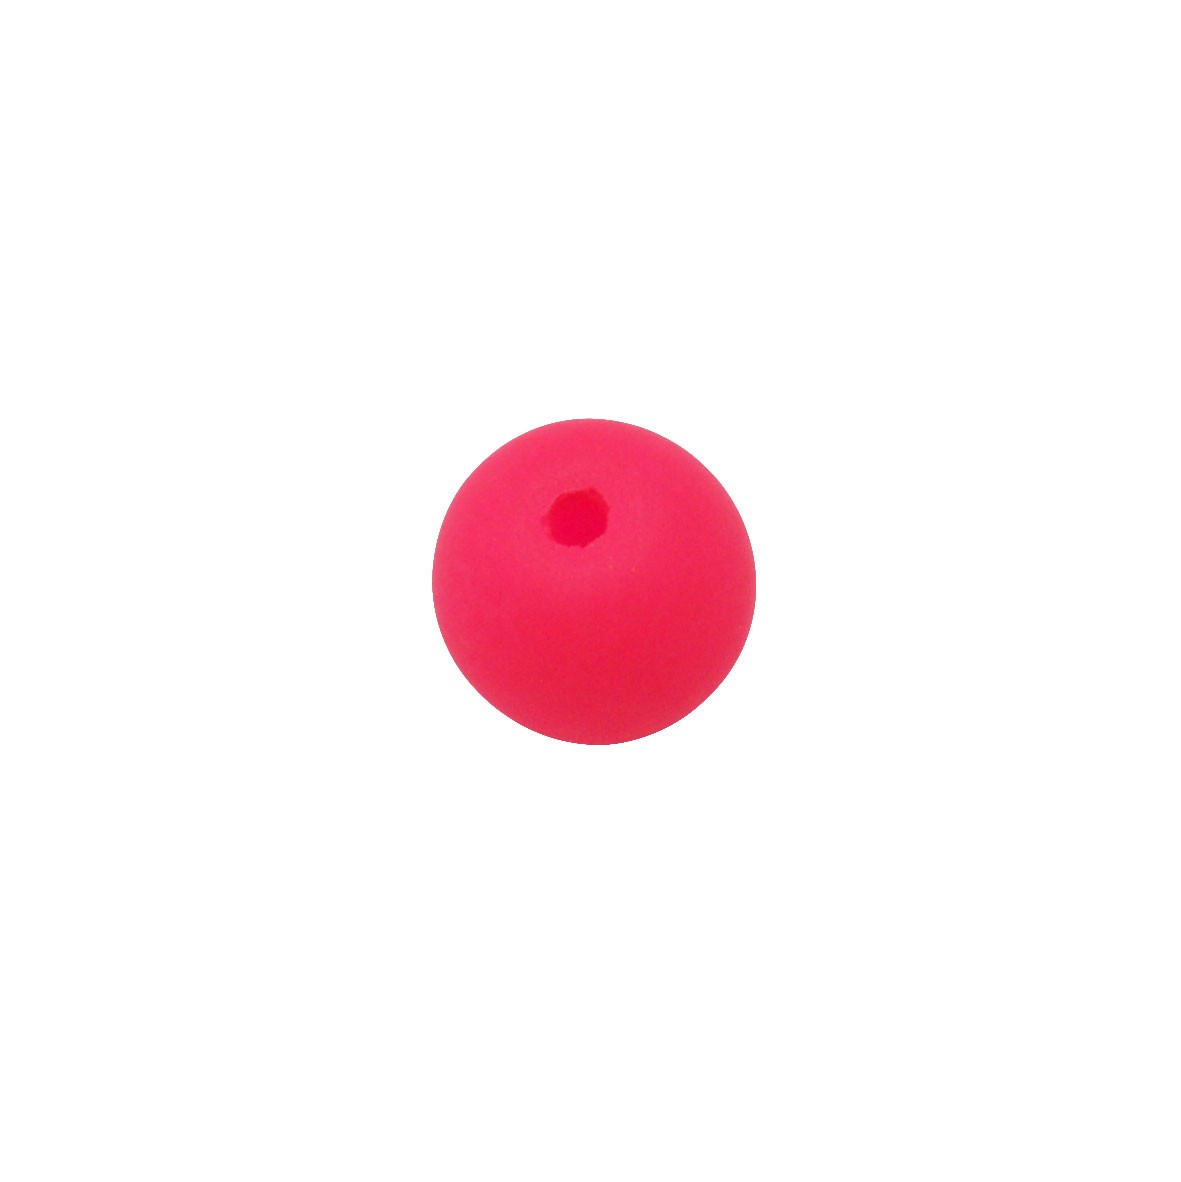 Roze (neon) ronde glaskraal